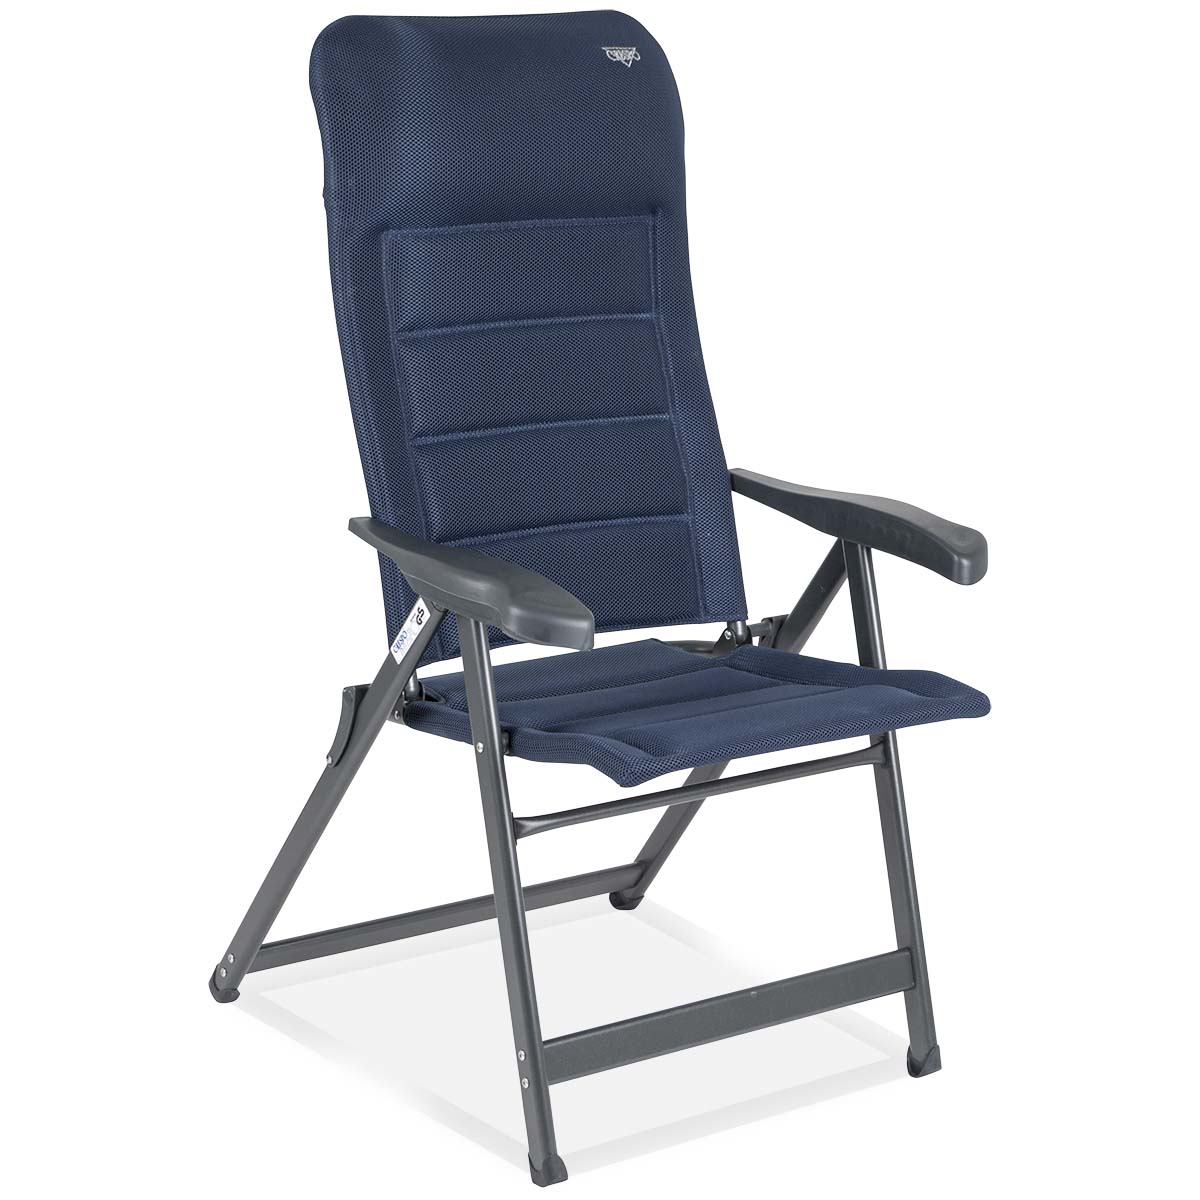 1149074 Een zeer luxe standenstoel. Deze stoel biedt maximaal comfort door de in 7 standen verstelbare rugleuning en de gepolsterde 3D stof. De comfortabele vulling van deze stof is extra luchtdoorlatend en houdt door de open celstructuur geen vocht vast. Hierdoor is de stoel veel sneller droog dan stoelen met een traditionele schuimvulling. Daarnaast zijn zowel de rugleuning, de zitting en de armleggers ergonomisch gevormd. De stoel is voorzien van een geanodiseerd H-frame voor extra stabiliteit en stevigheid. Ingeklapt is deze stoel zeer compact en daardoor gemakkelijk mee te nemen. Maximale belasting: 140 kilogram.